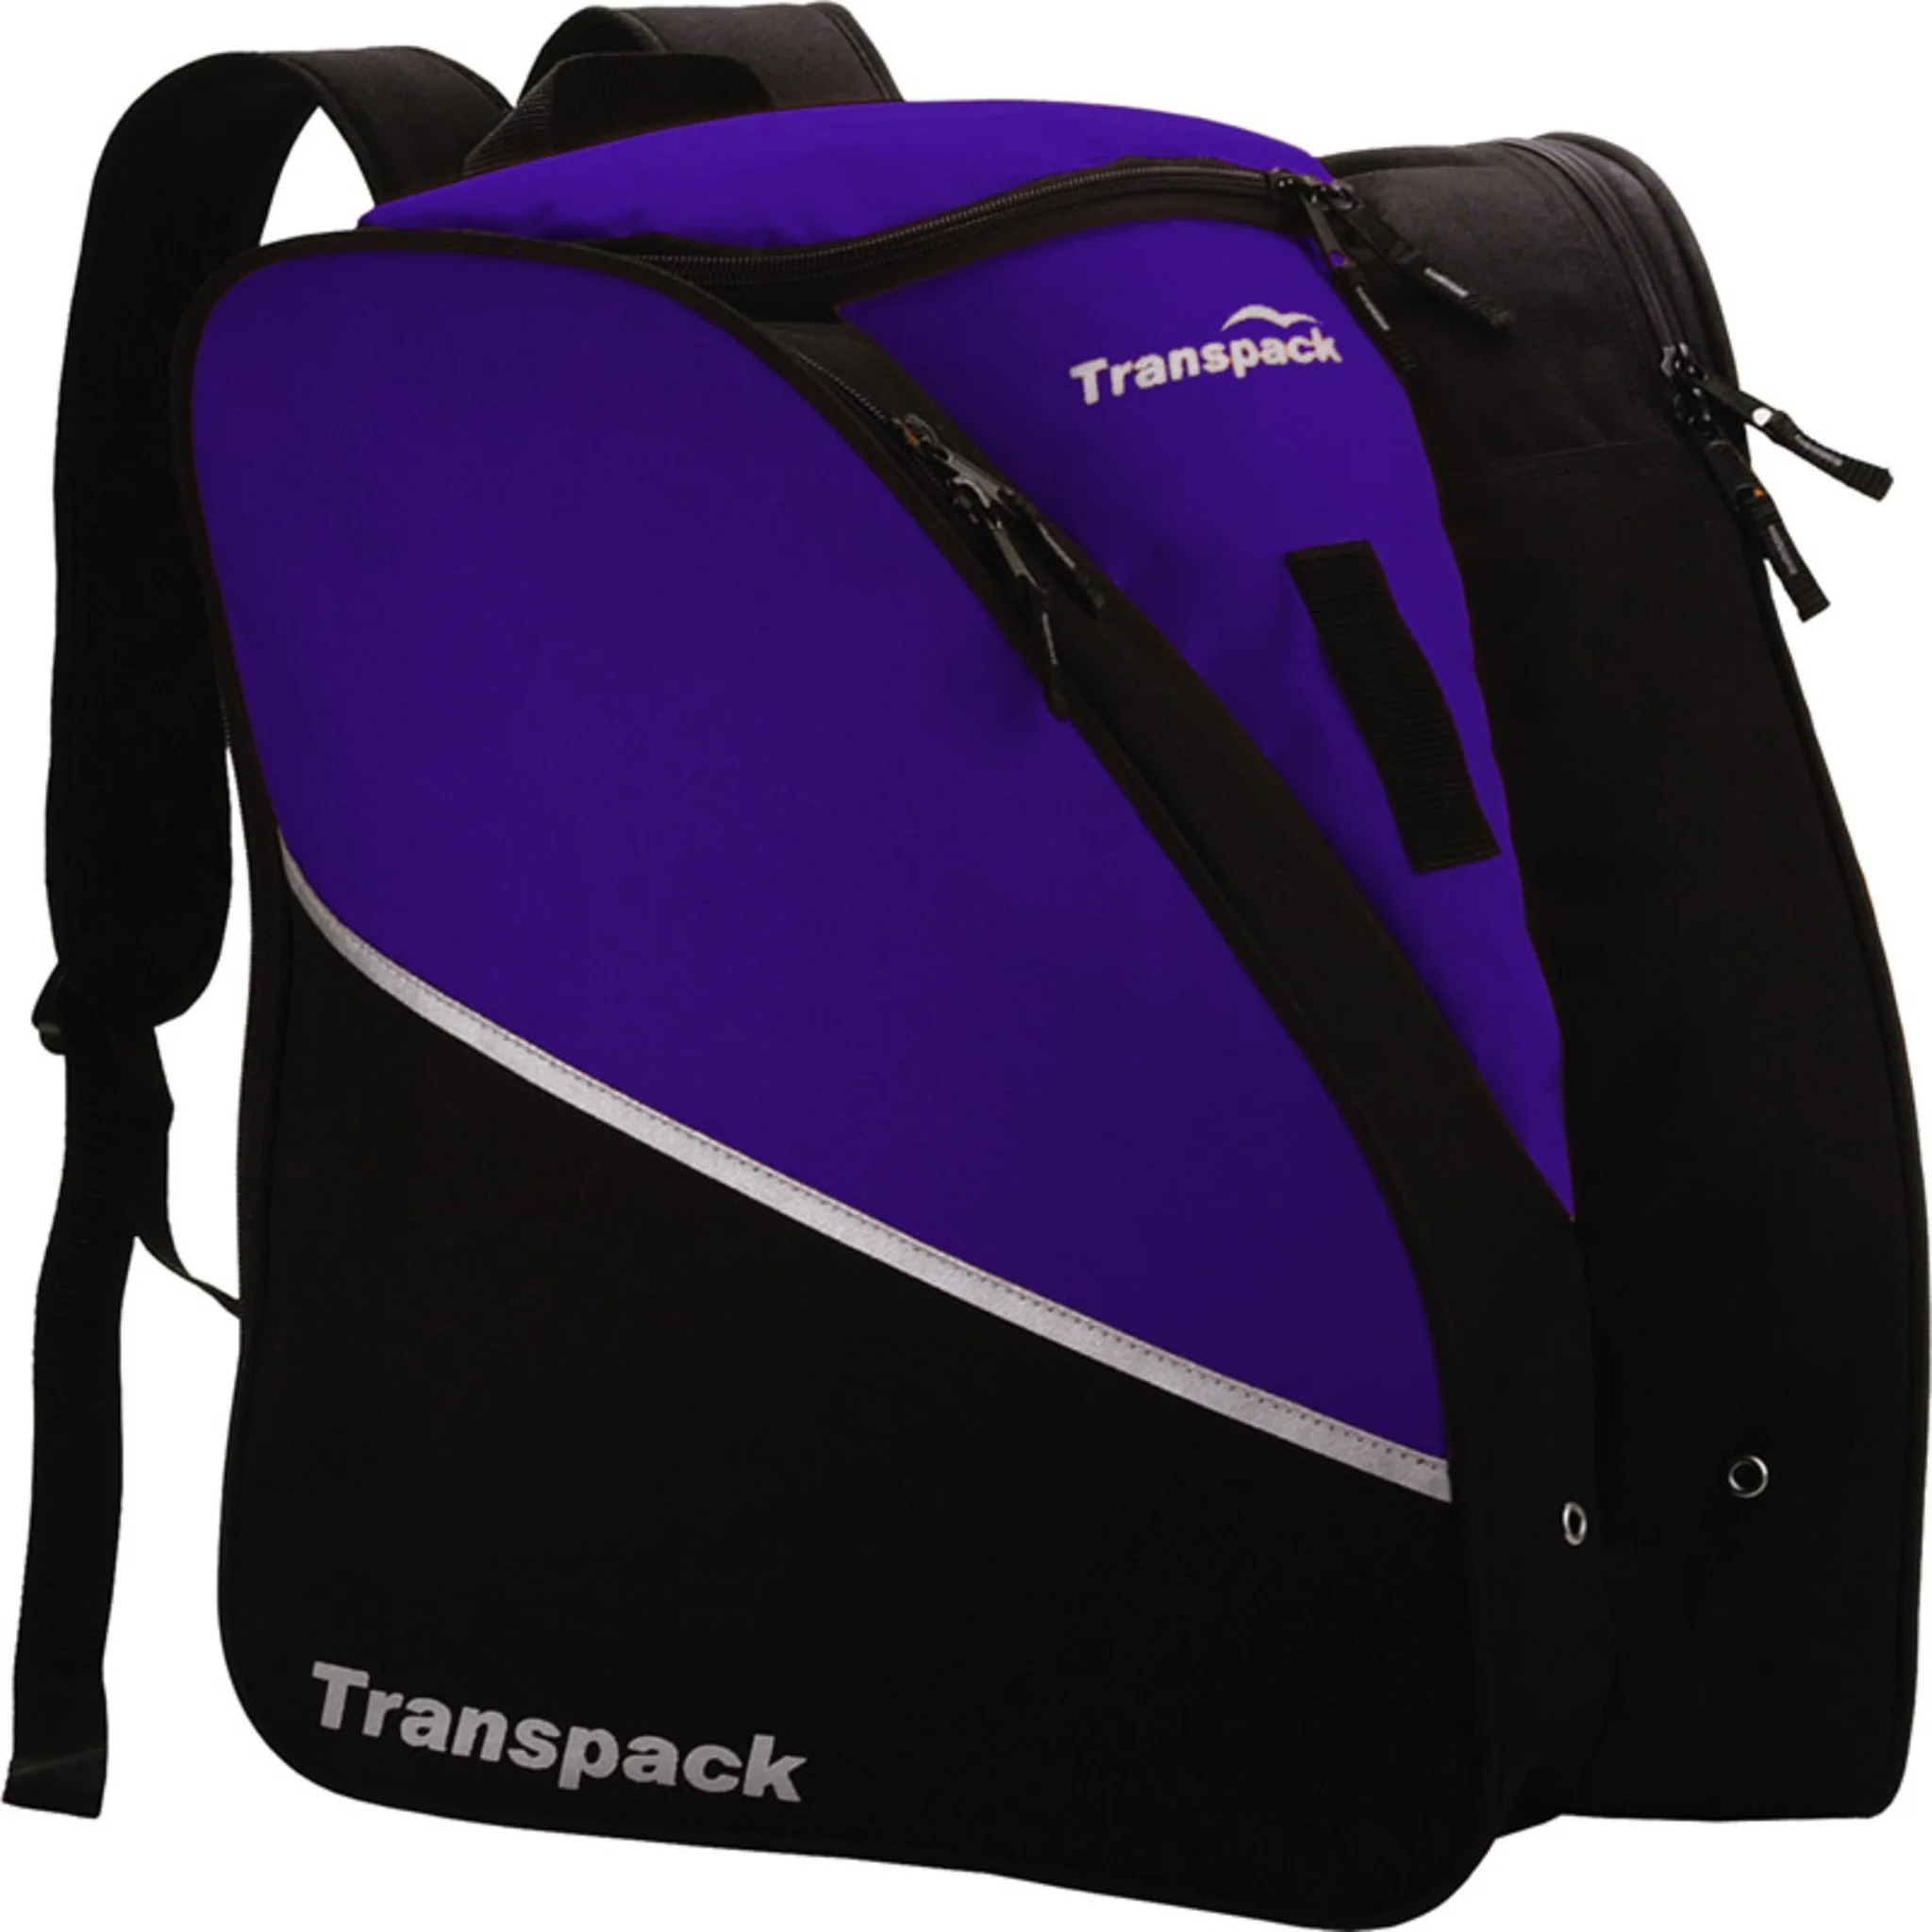 Transpack Edge Boot Bag-Black - image 5 of 8